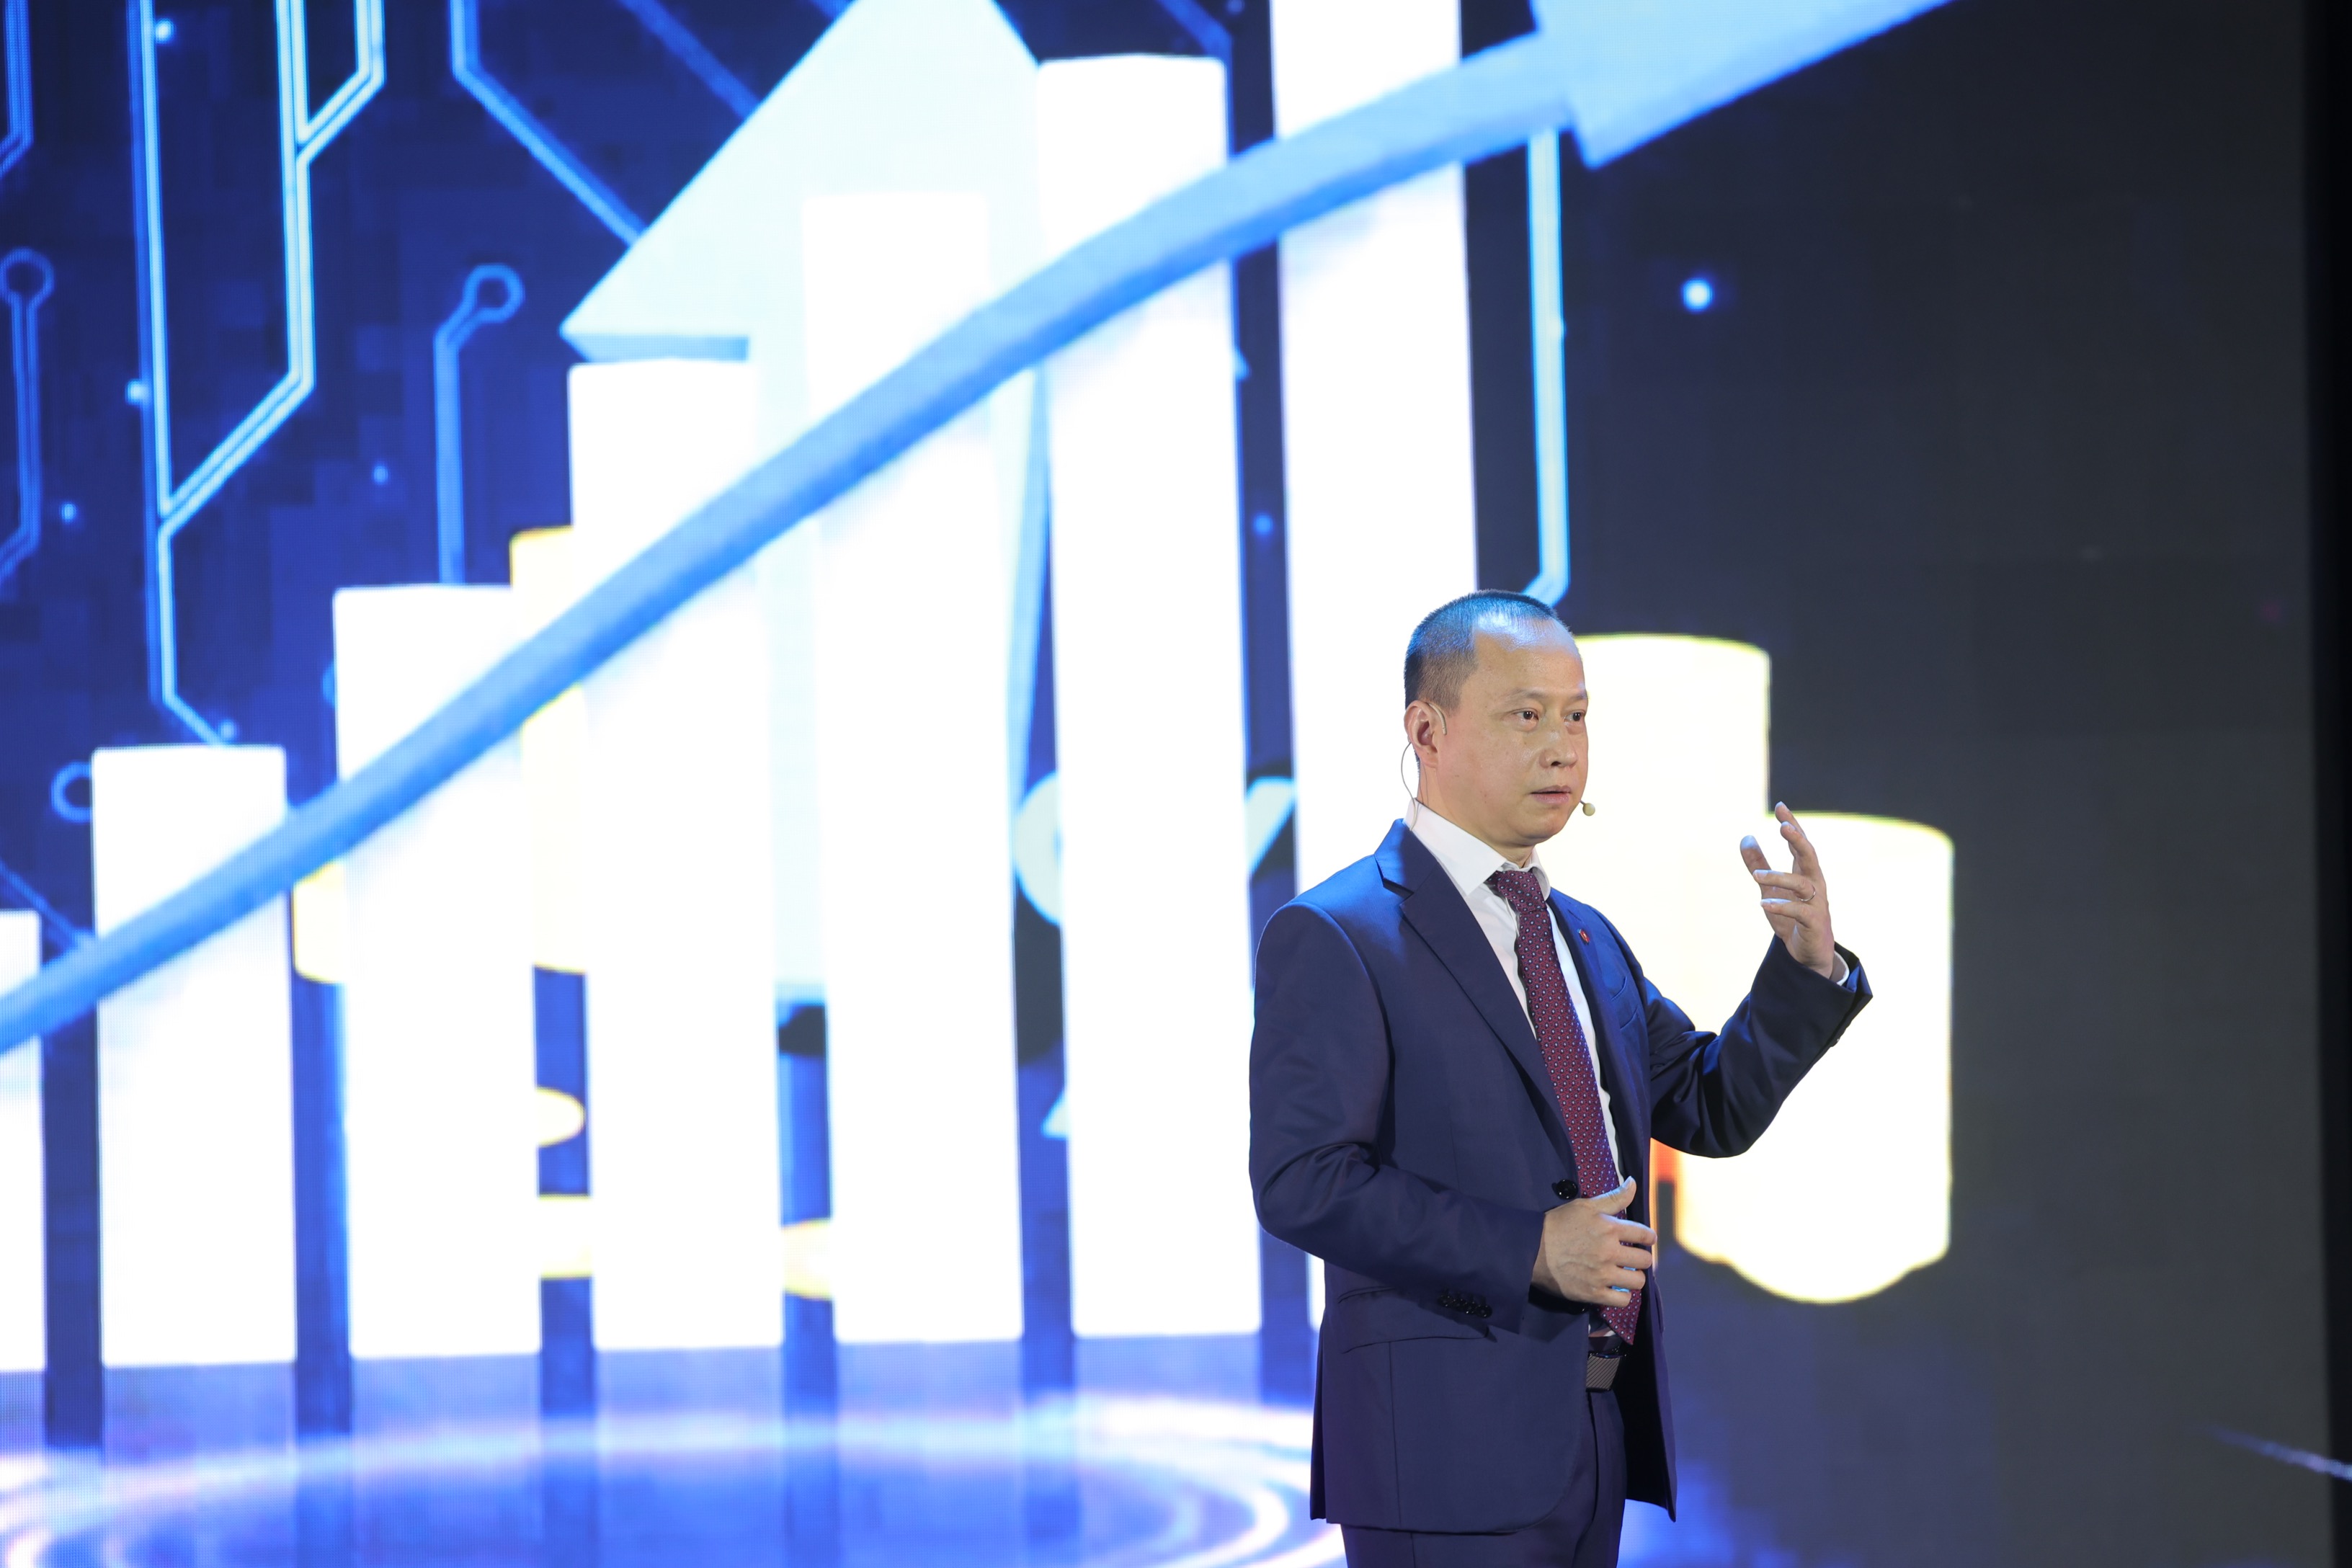 Ông Phùng Quang Hưng – Phó tổng giám đốc Techcombank giới thiệu giải pháp tài chính cá nhân hóa cho từng khách hàng dựa trên nền tảng số hóa và Big data. Ảnh: Techcombank